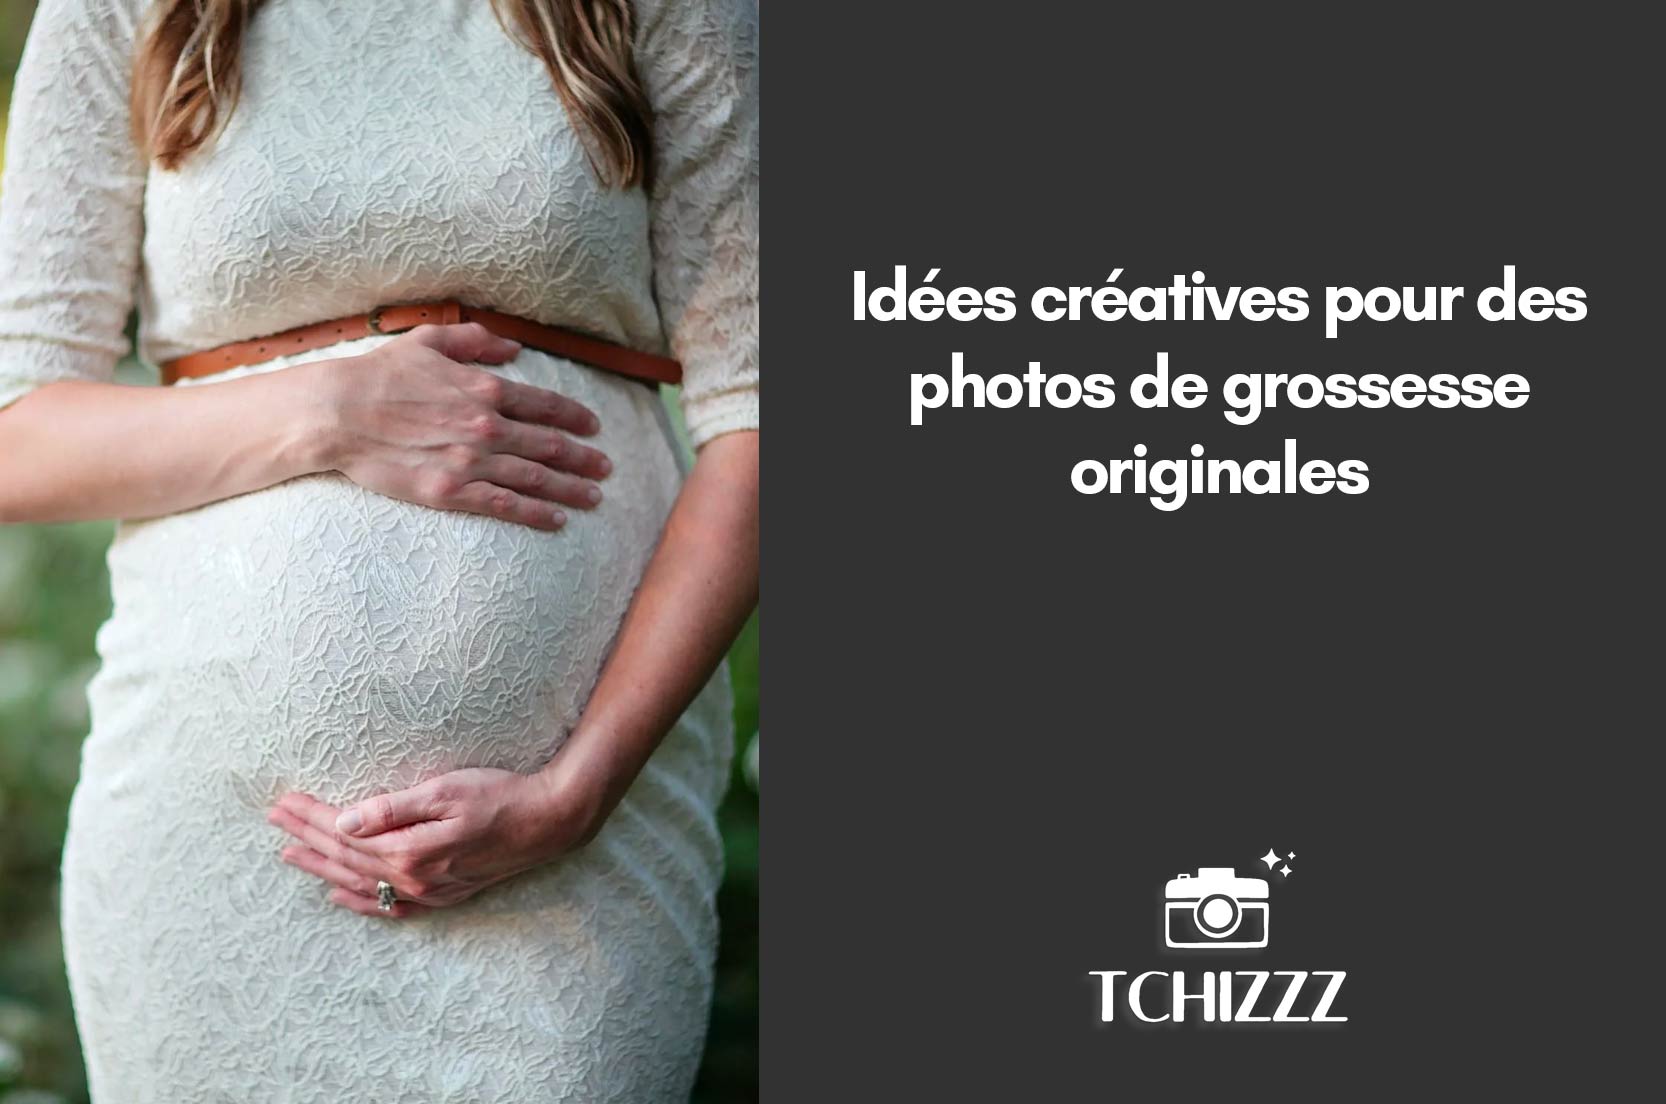 You are currently viewing Idées créatives pour des photos de grossesse originales